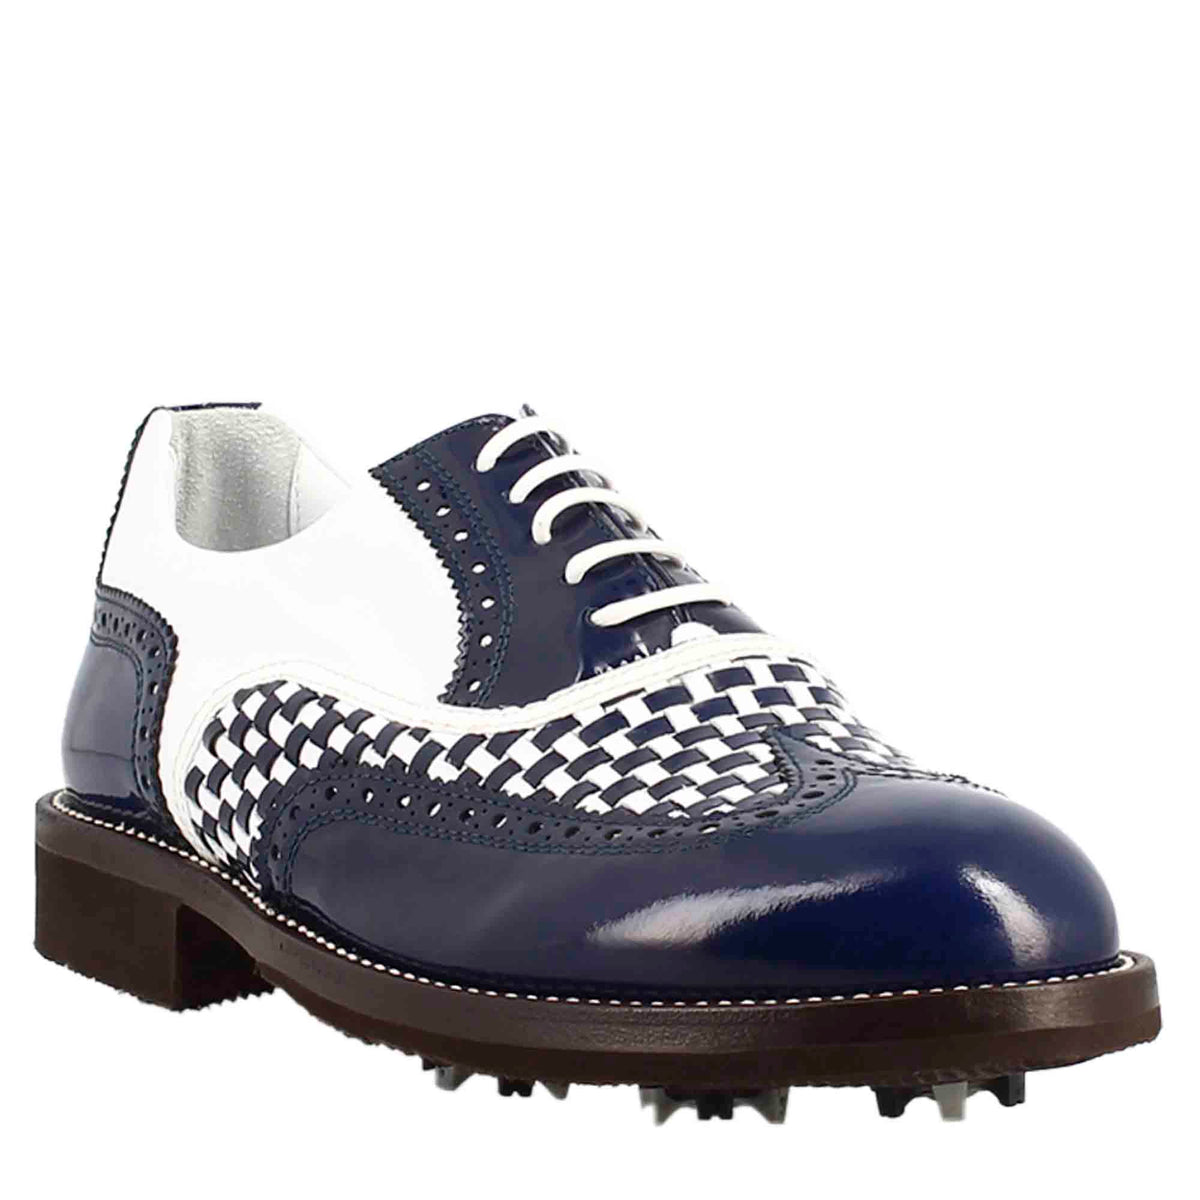 Chaussures de golf pour homme en cuir bleu et blanc avec détails de type brogue, fabriquées à la main